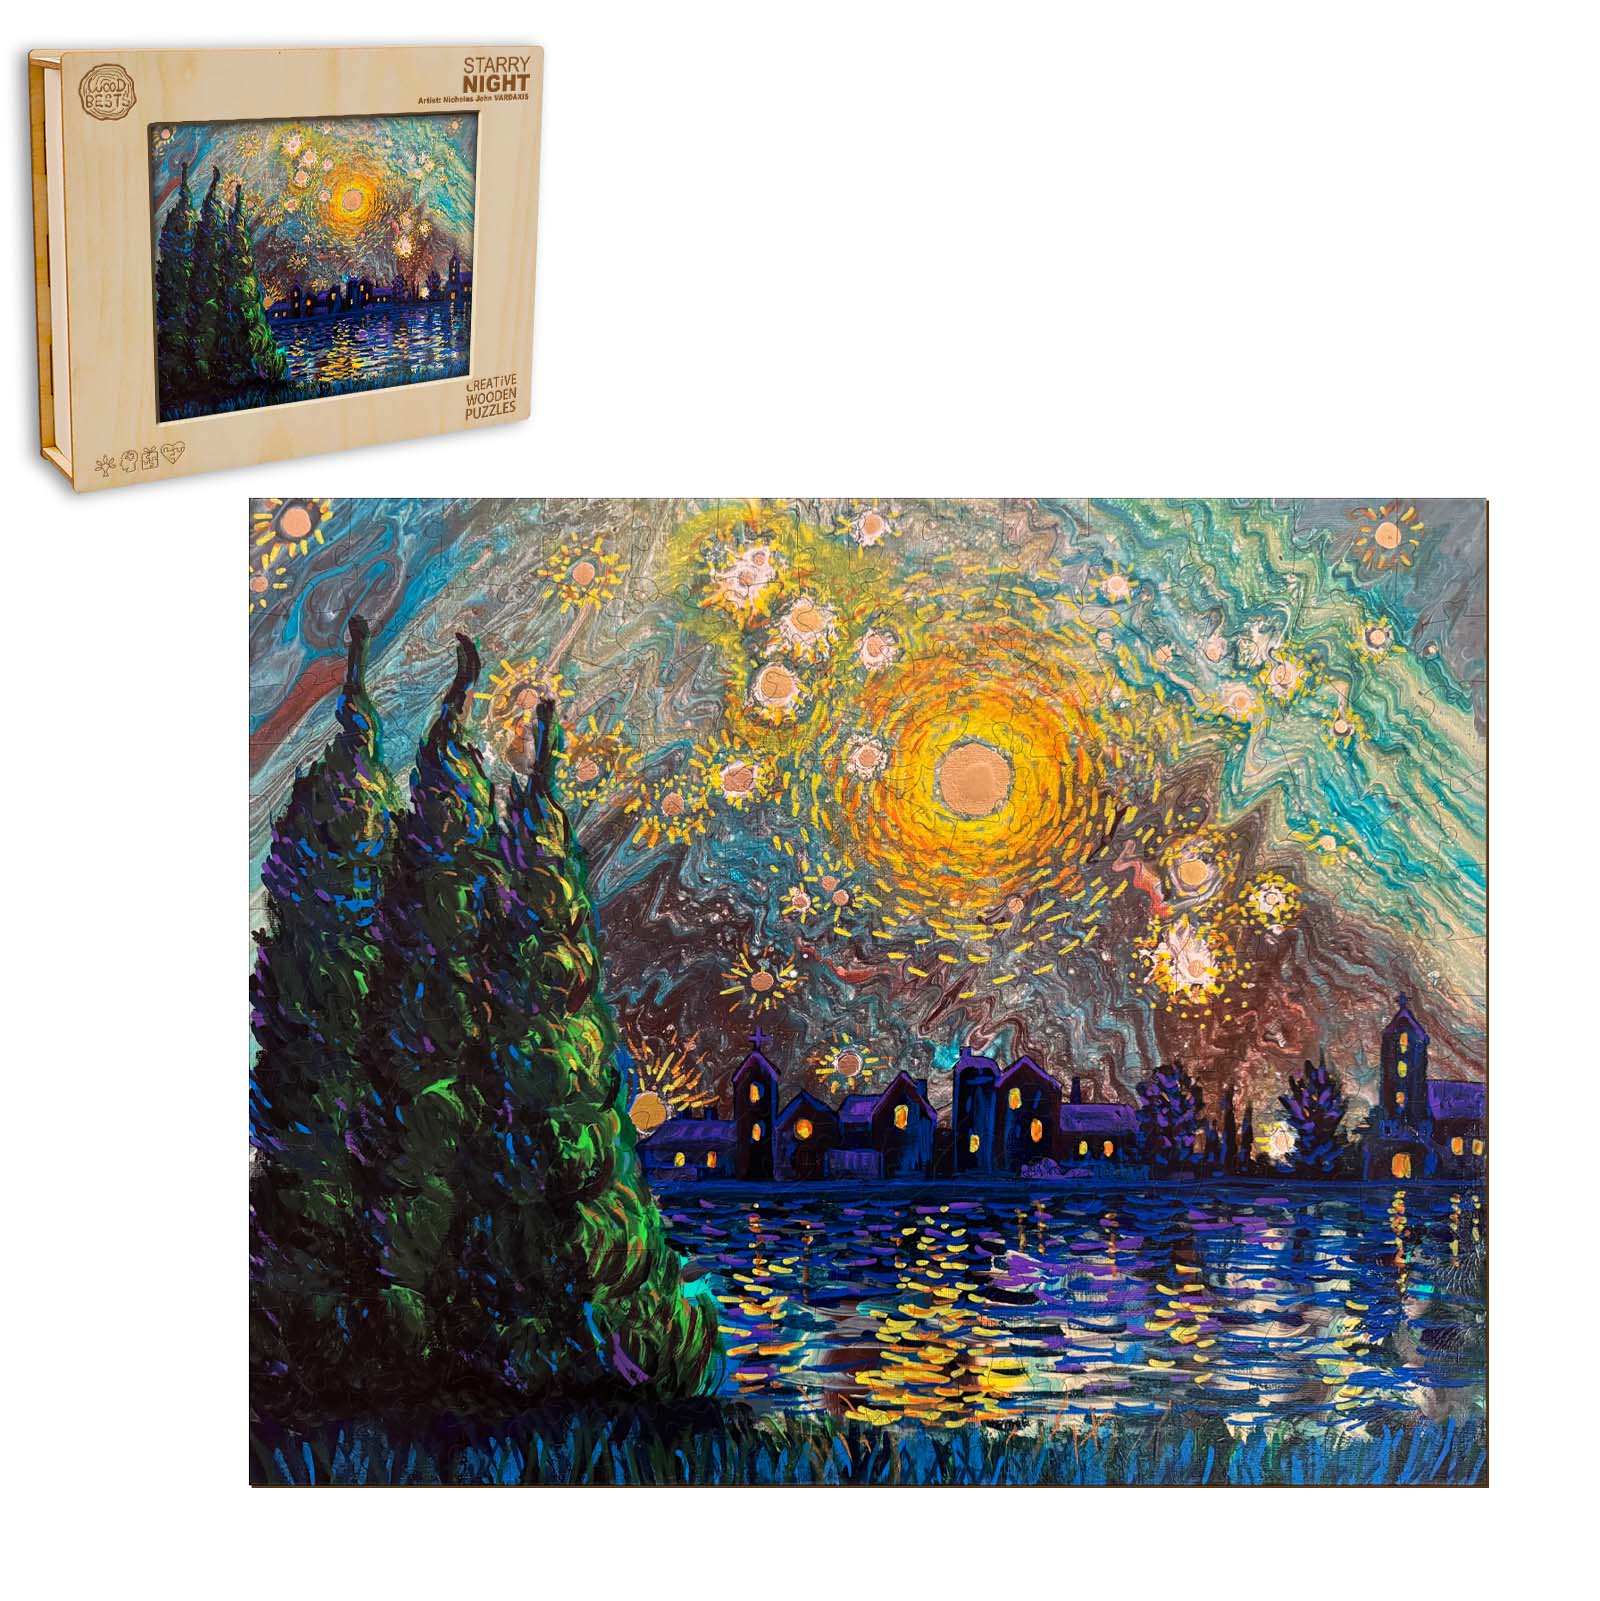 Starry Night - By Artist Nicholas John VARDAXIS